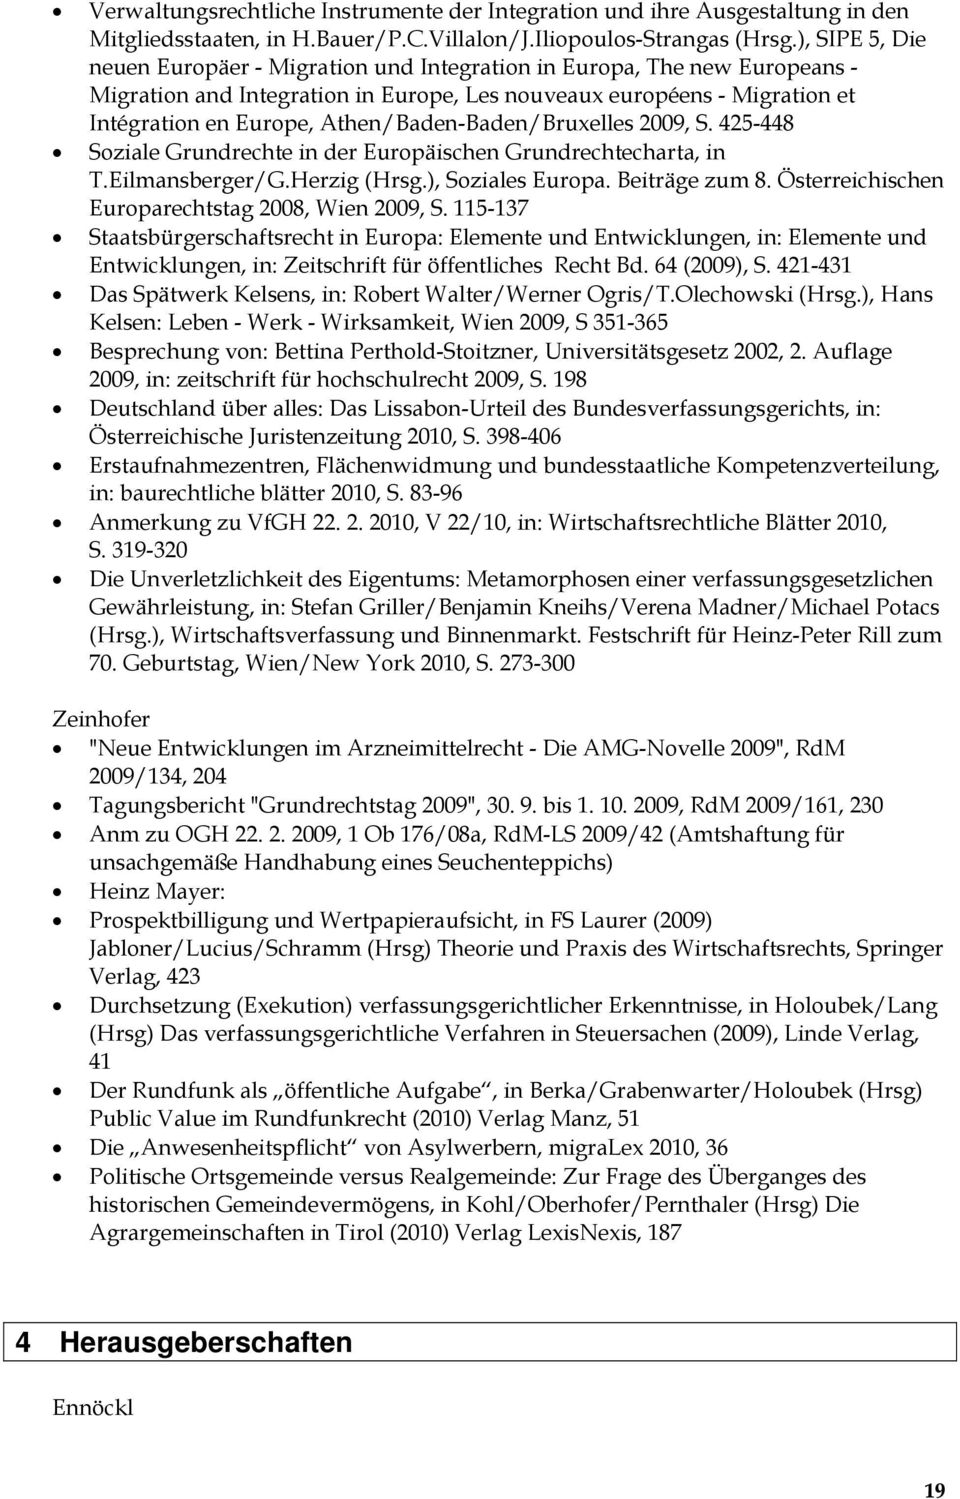 Athen/Baden-Baden/Bruxelles 2009, S. 425-448 Soziale Grundrechte in der Europäischen Grundrechtecharta, in T.Eilmansberger/G.Herzig (Hrsg.), Soziales Europa. Beiträge zum 8.